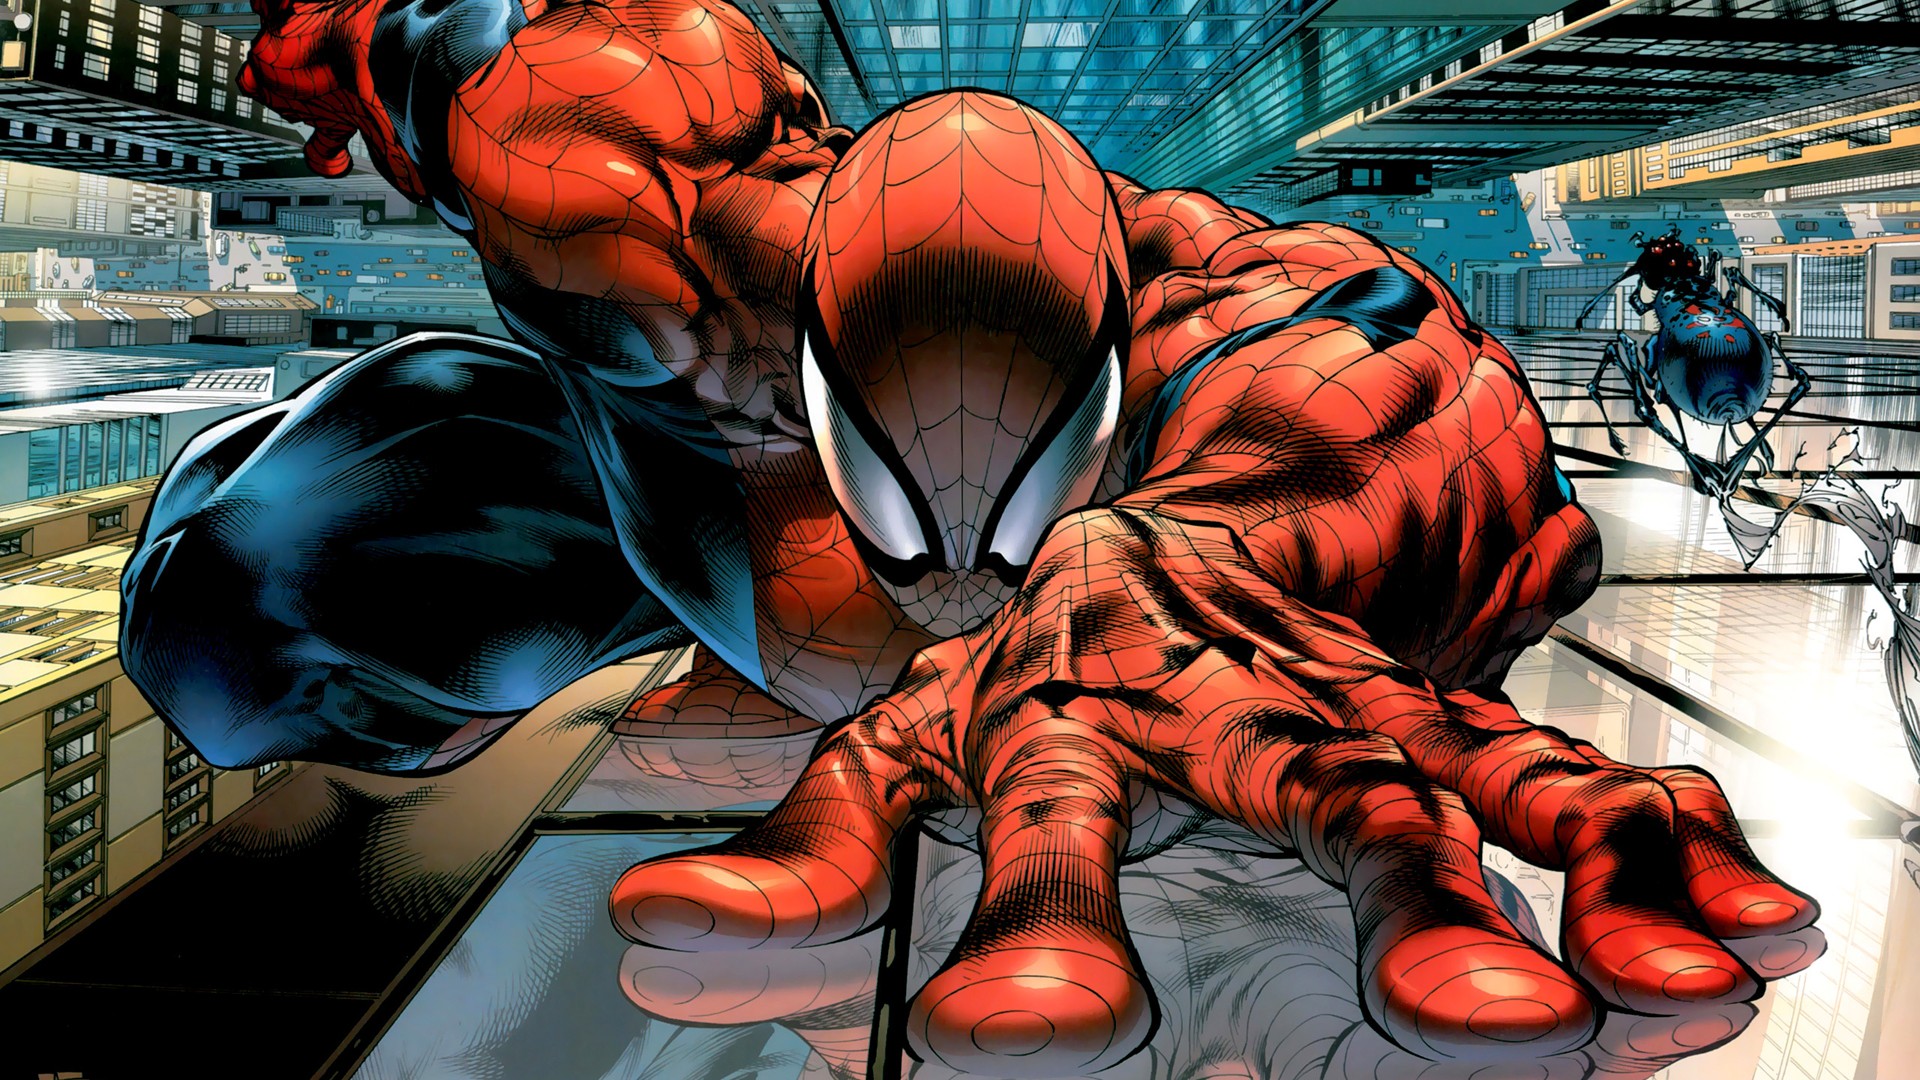 General 1920x1080 Spider-Man comic art Marvel Comics comics superhero